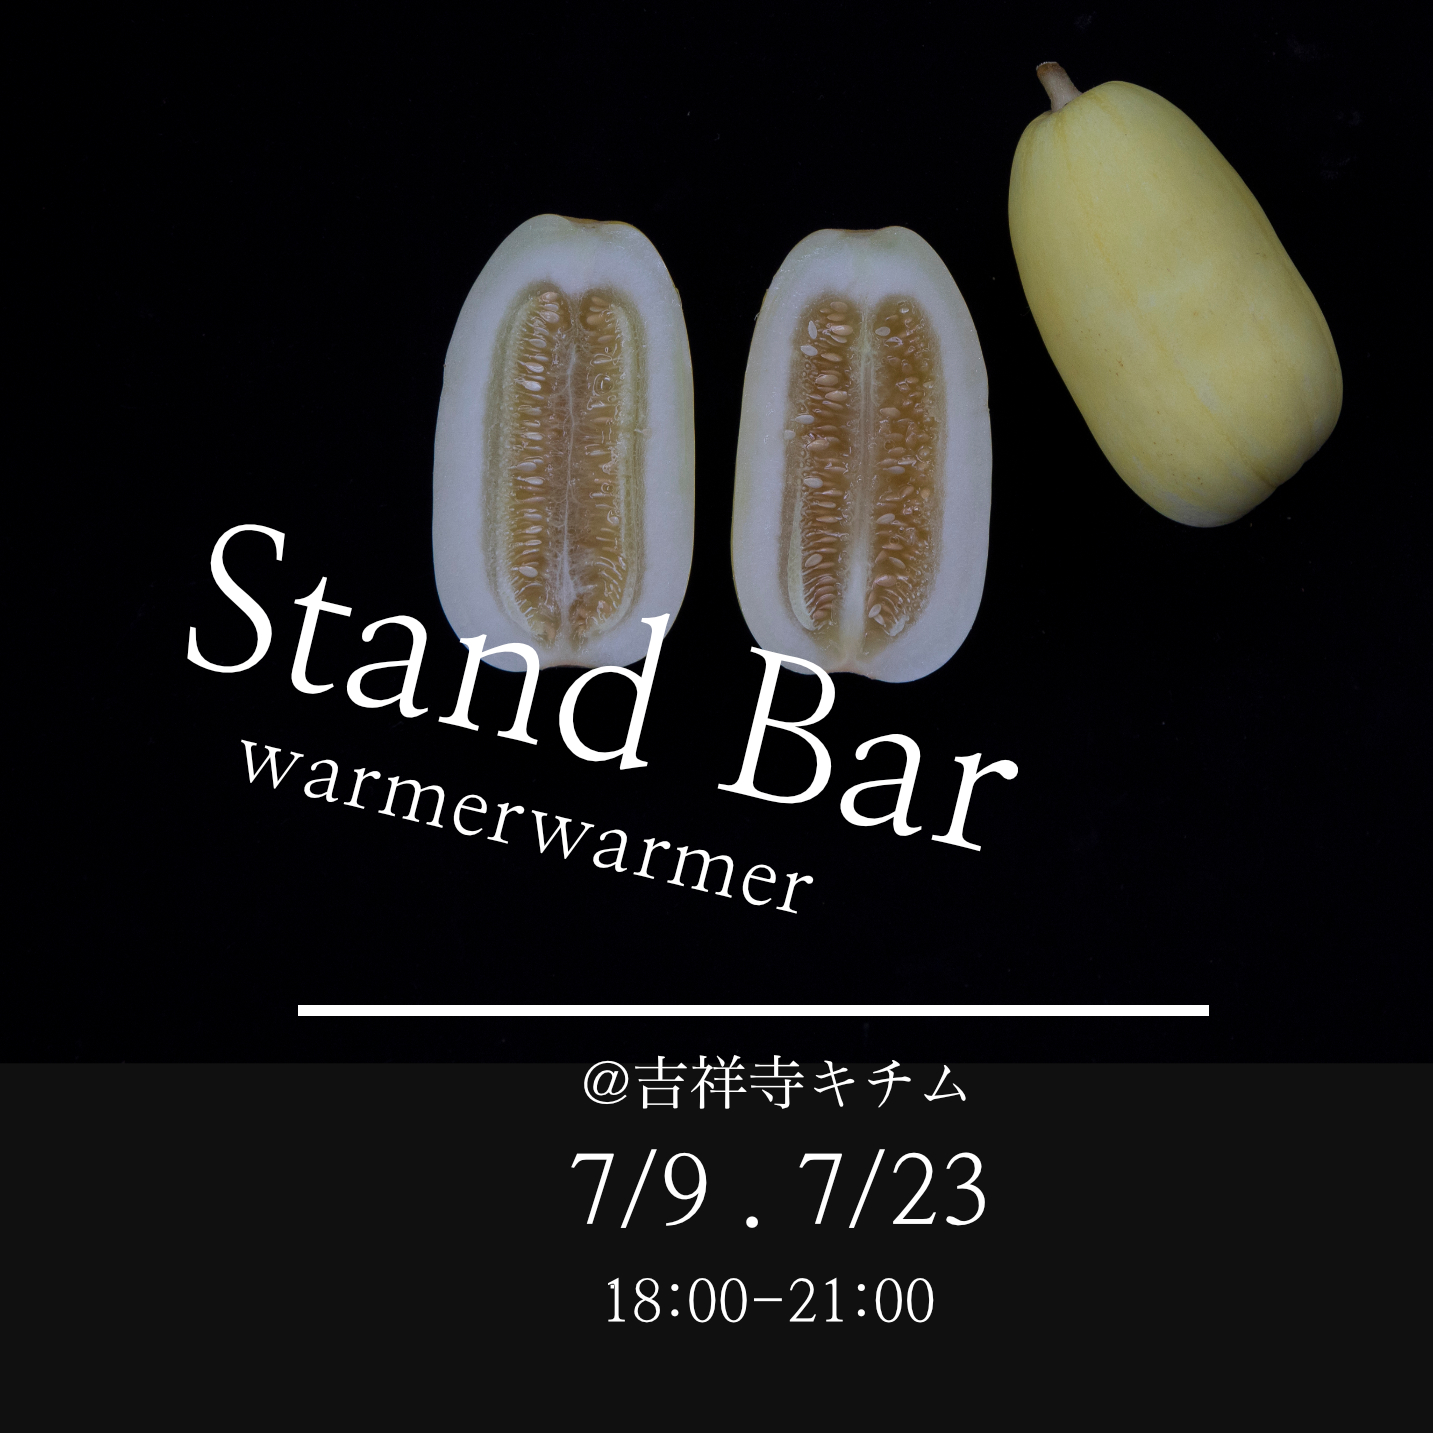 7/9 , 23　Stand Bar